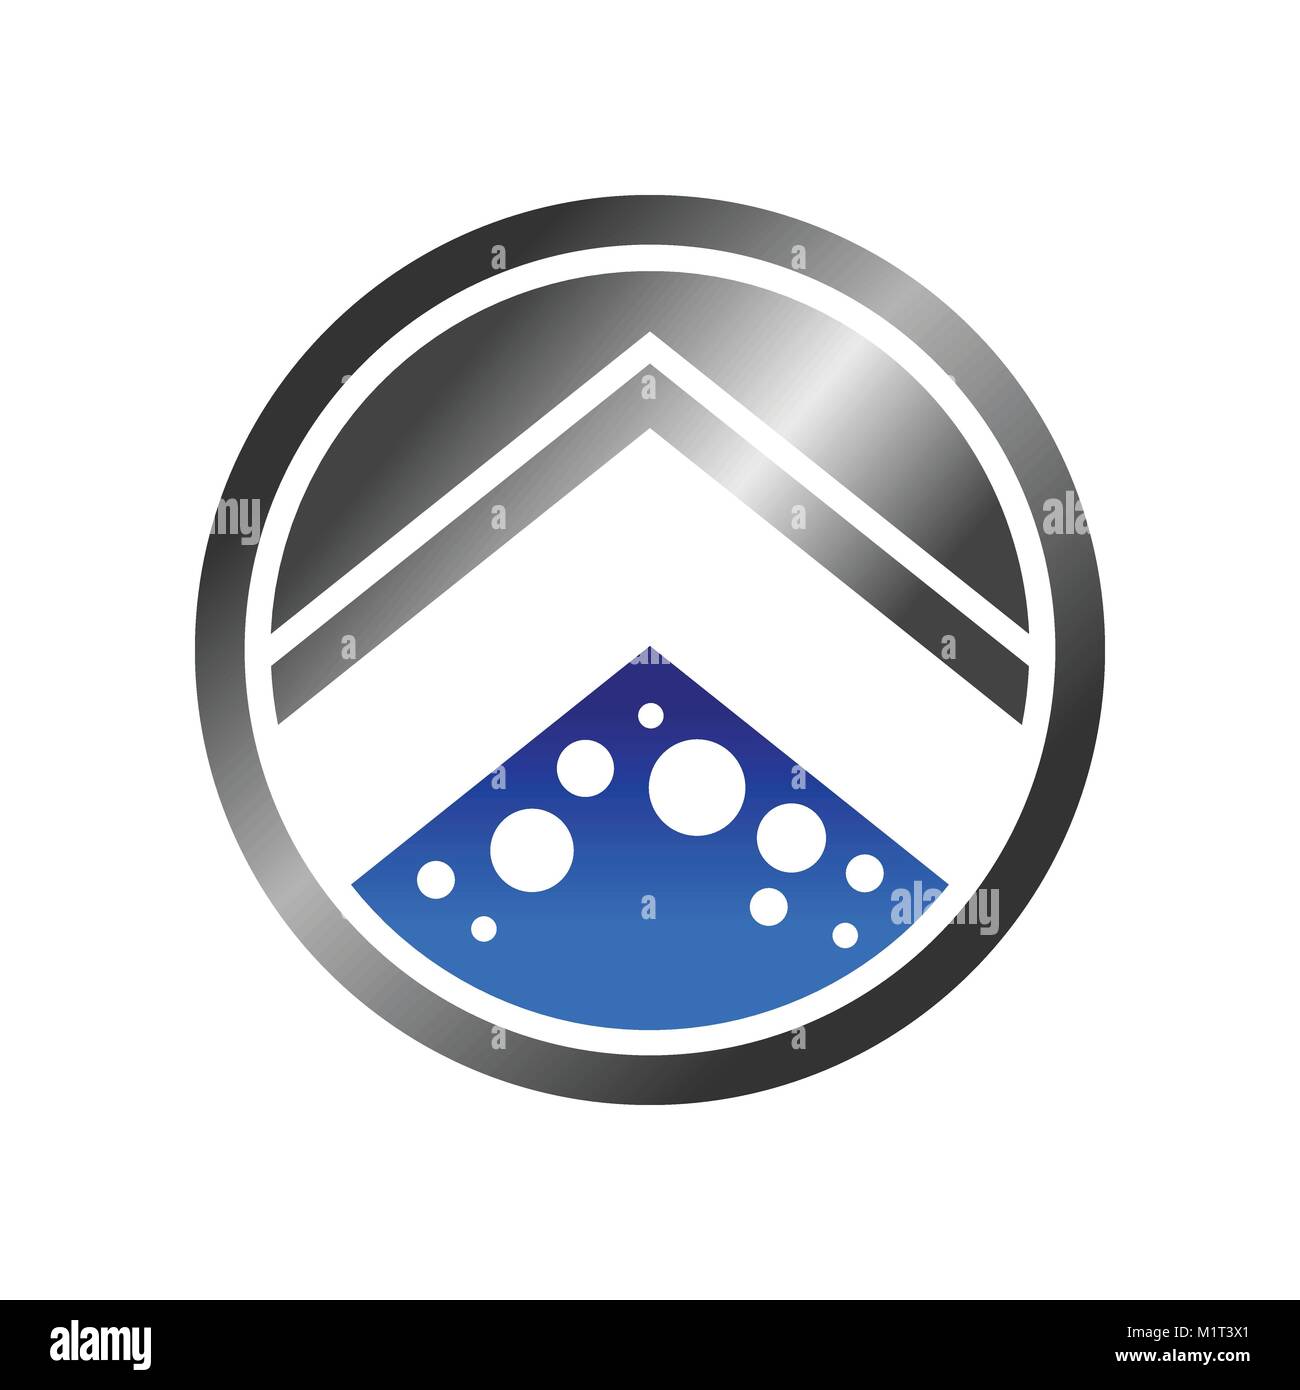 Bolla astratta Home simbolo di circolo Vector Graphic Logo Design Illustrazione Vettoriale